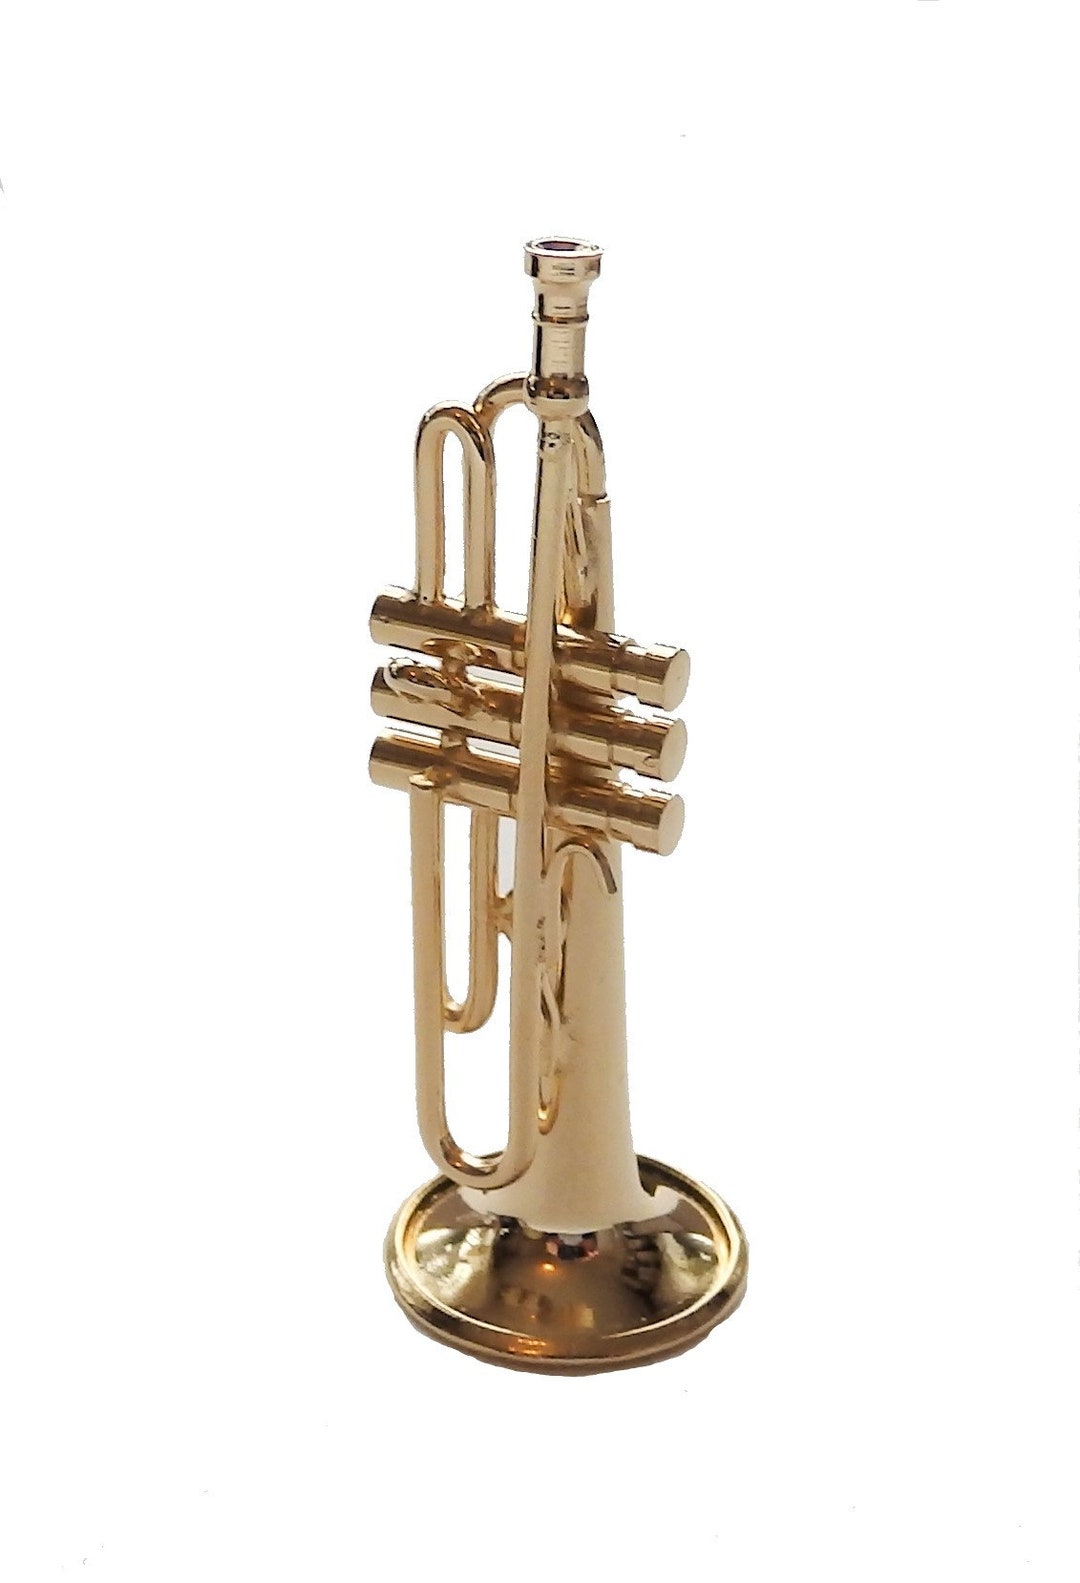 Brass mini trompette avec support et boîtier mini instrument de musique mini  trompette mini modèle de maison de poupée